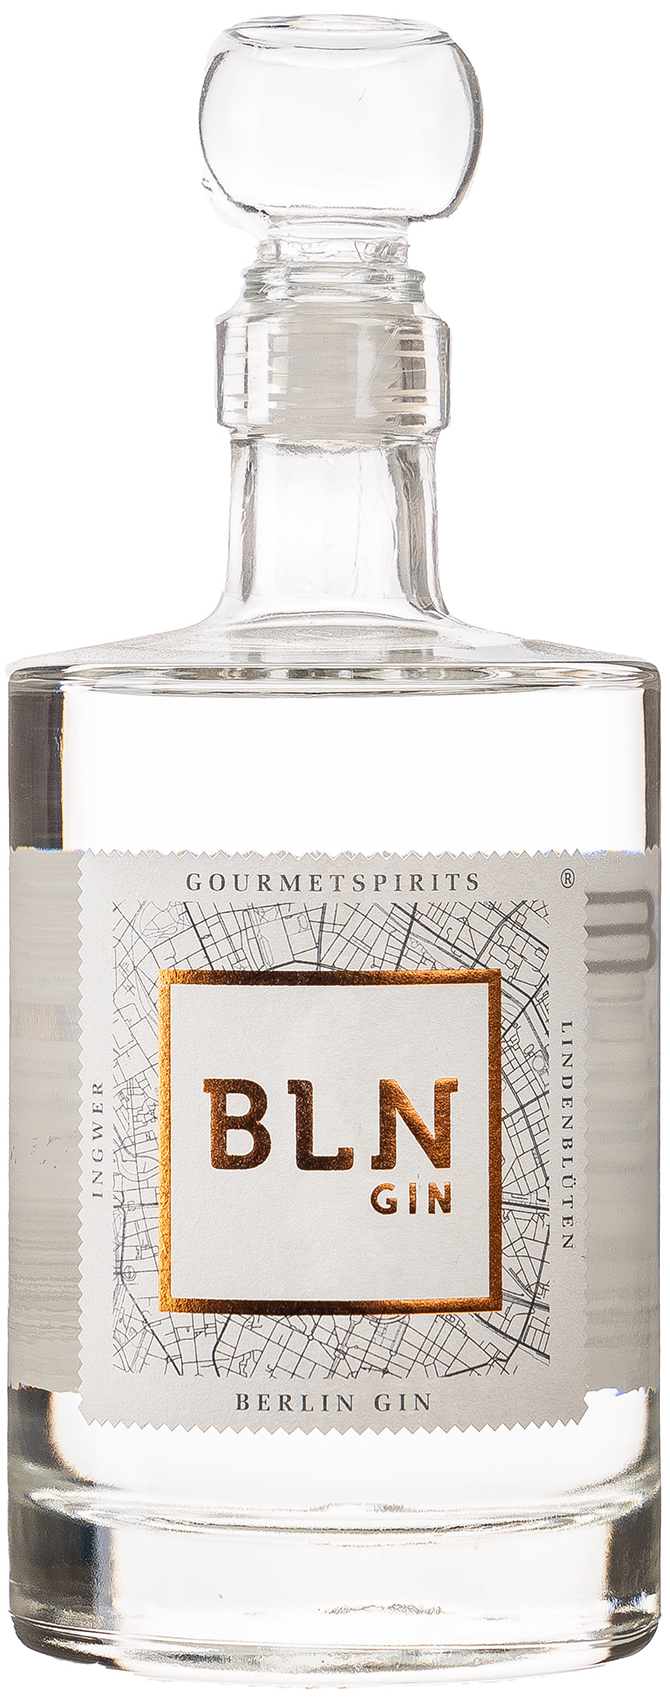 BLN Berlin Lindenblüten Ingwer Gin 45% vol. 0,5L